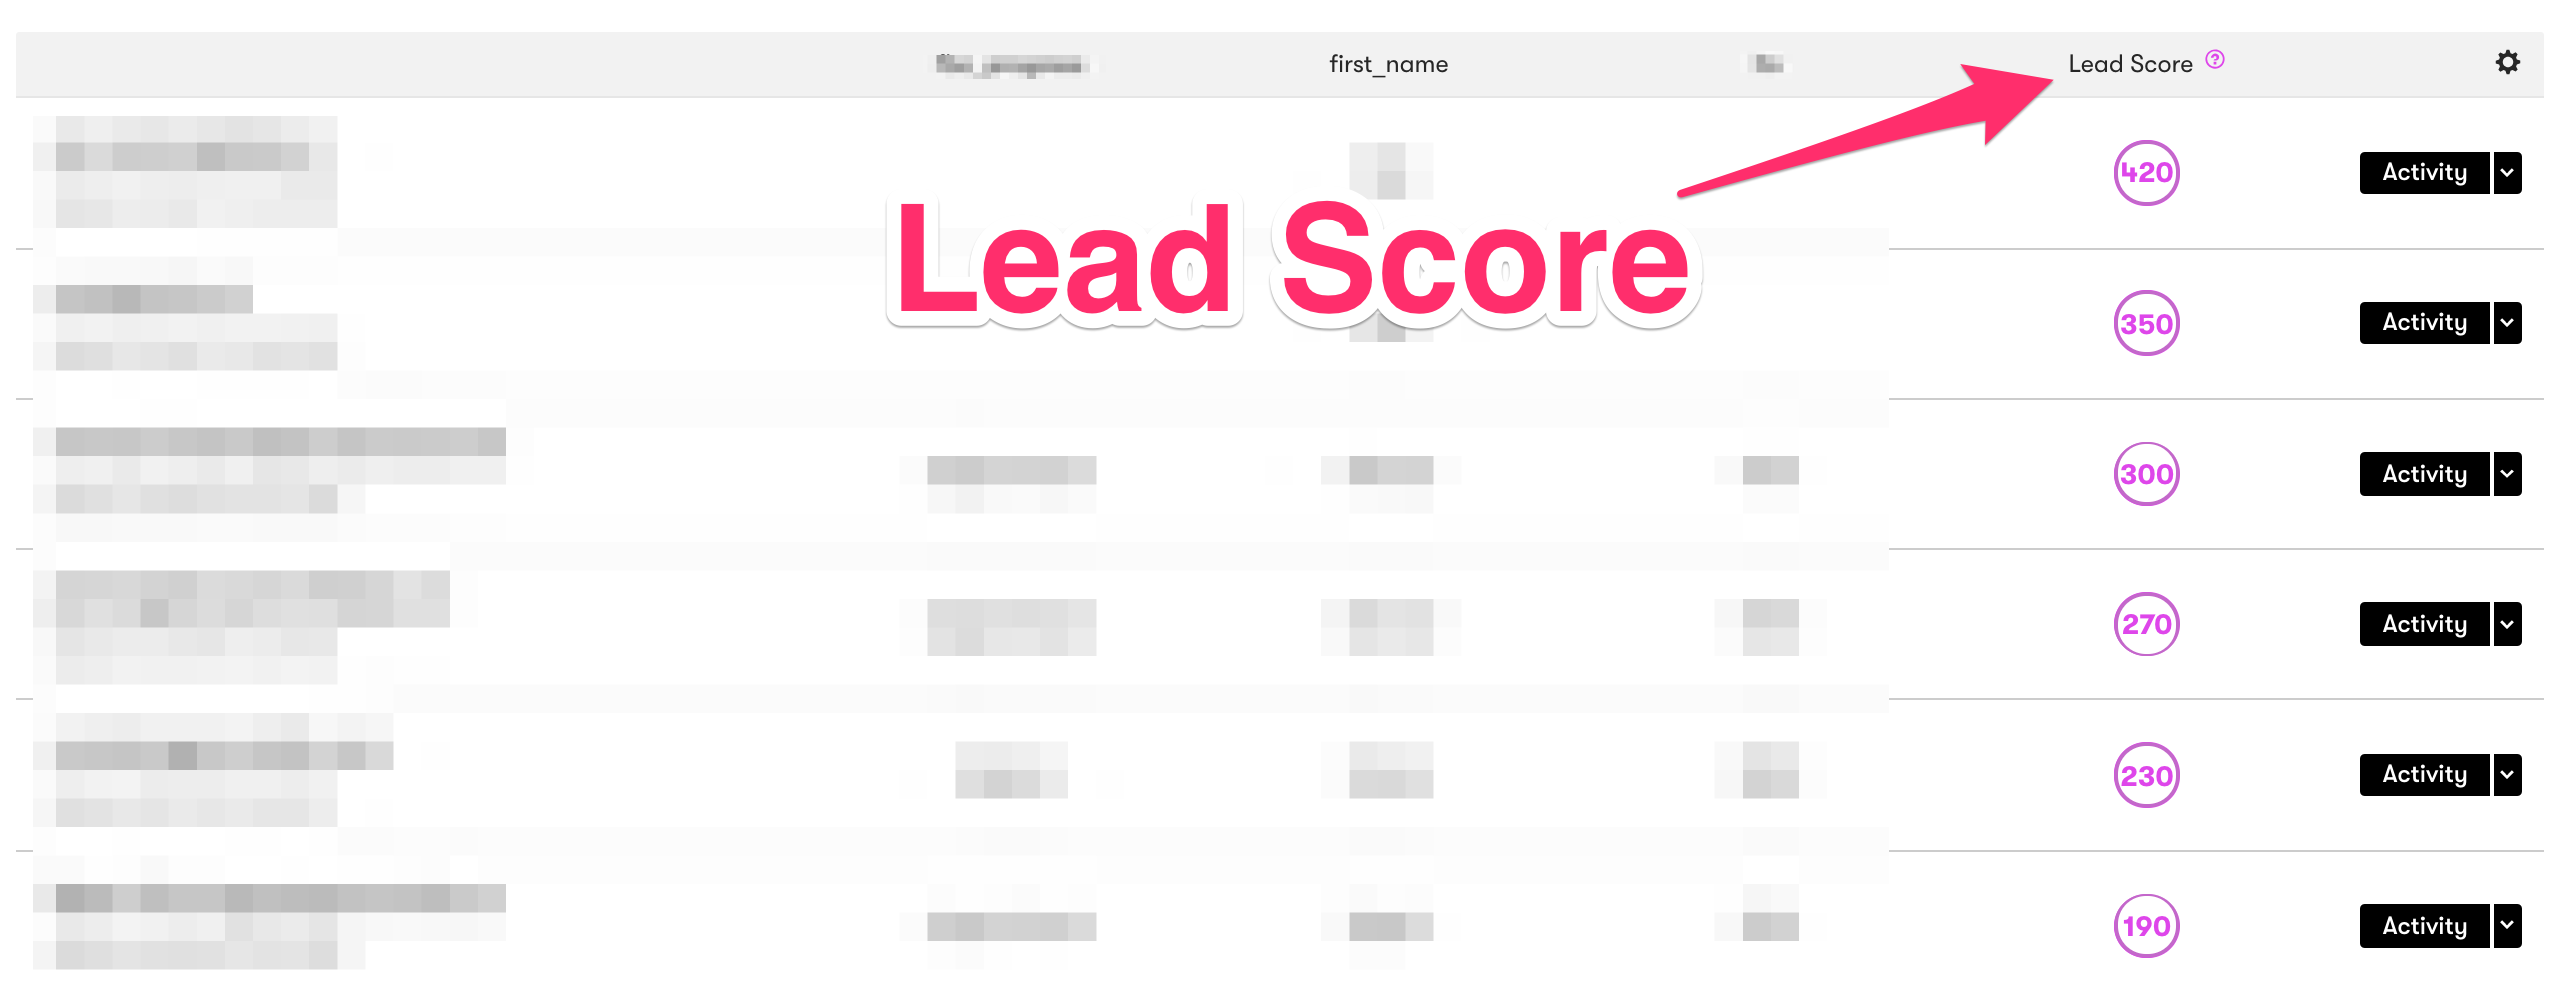 Lead Score